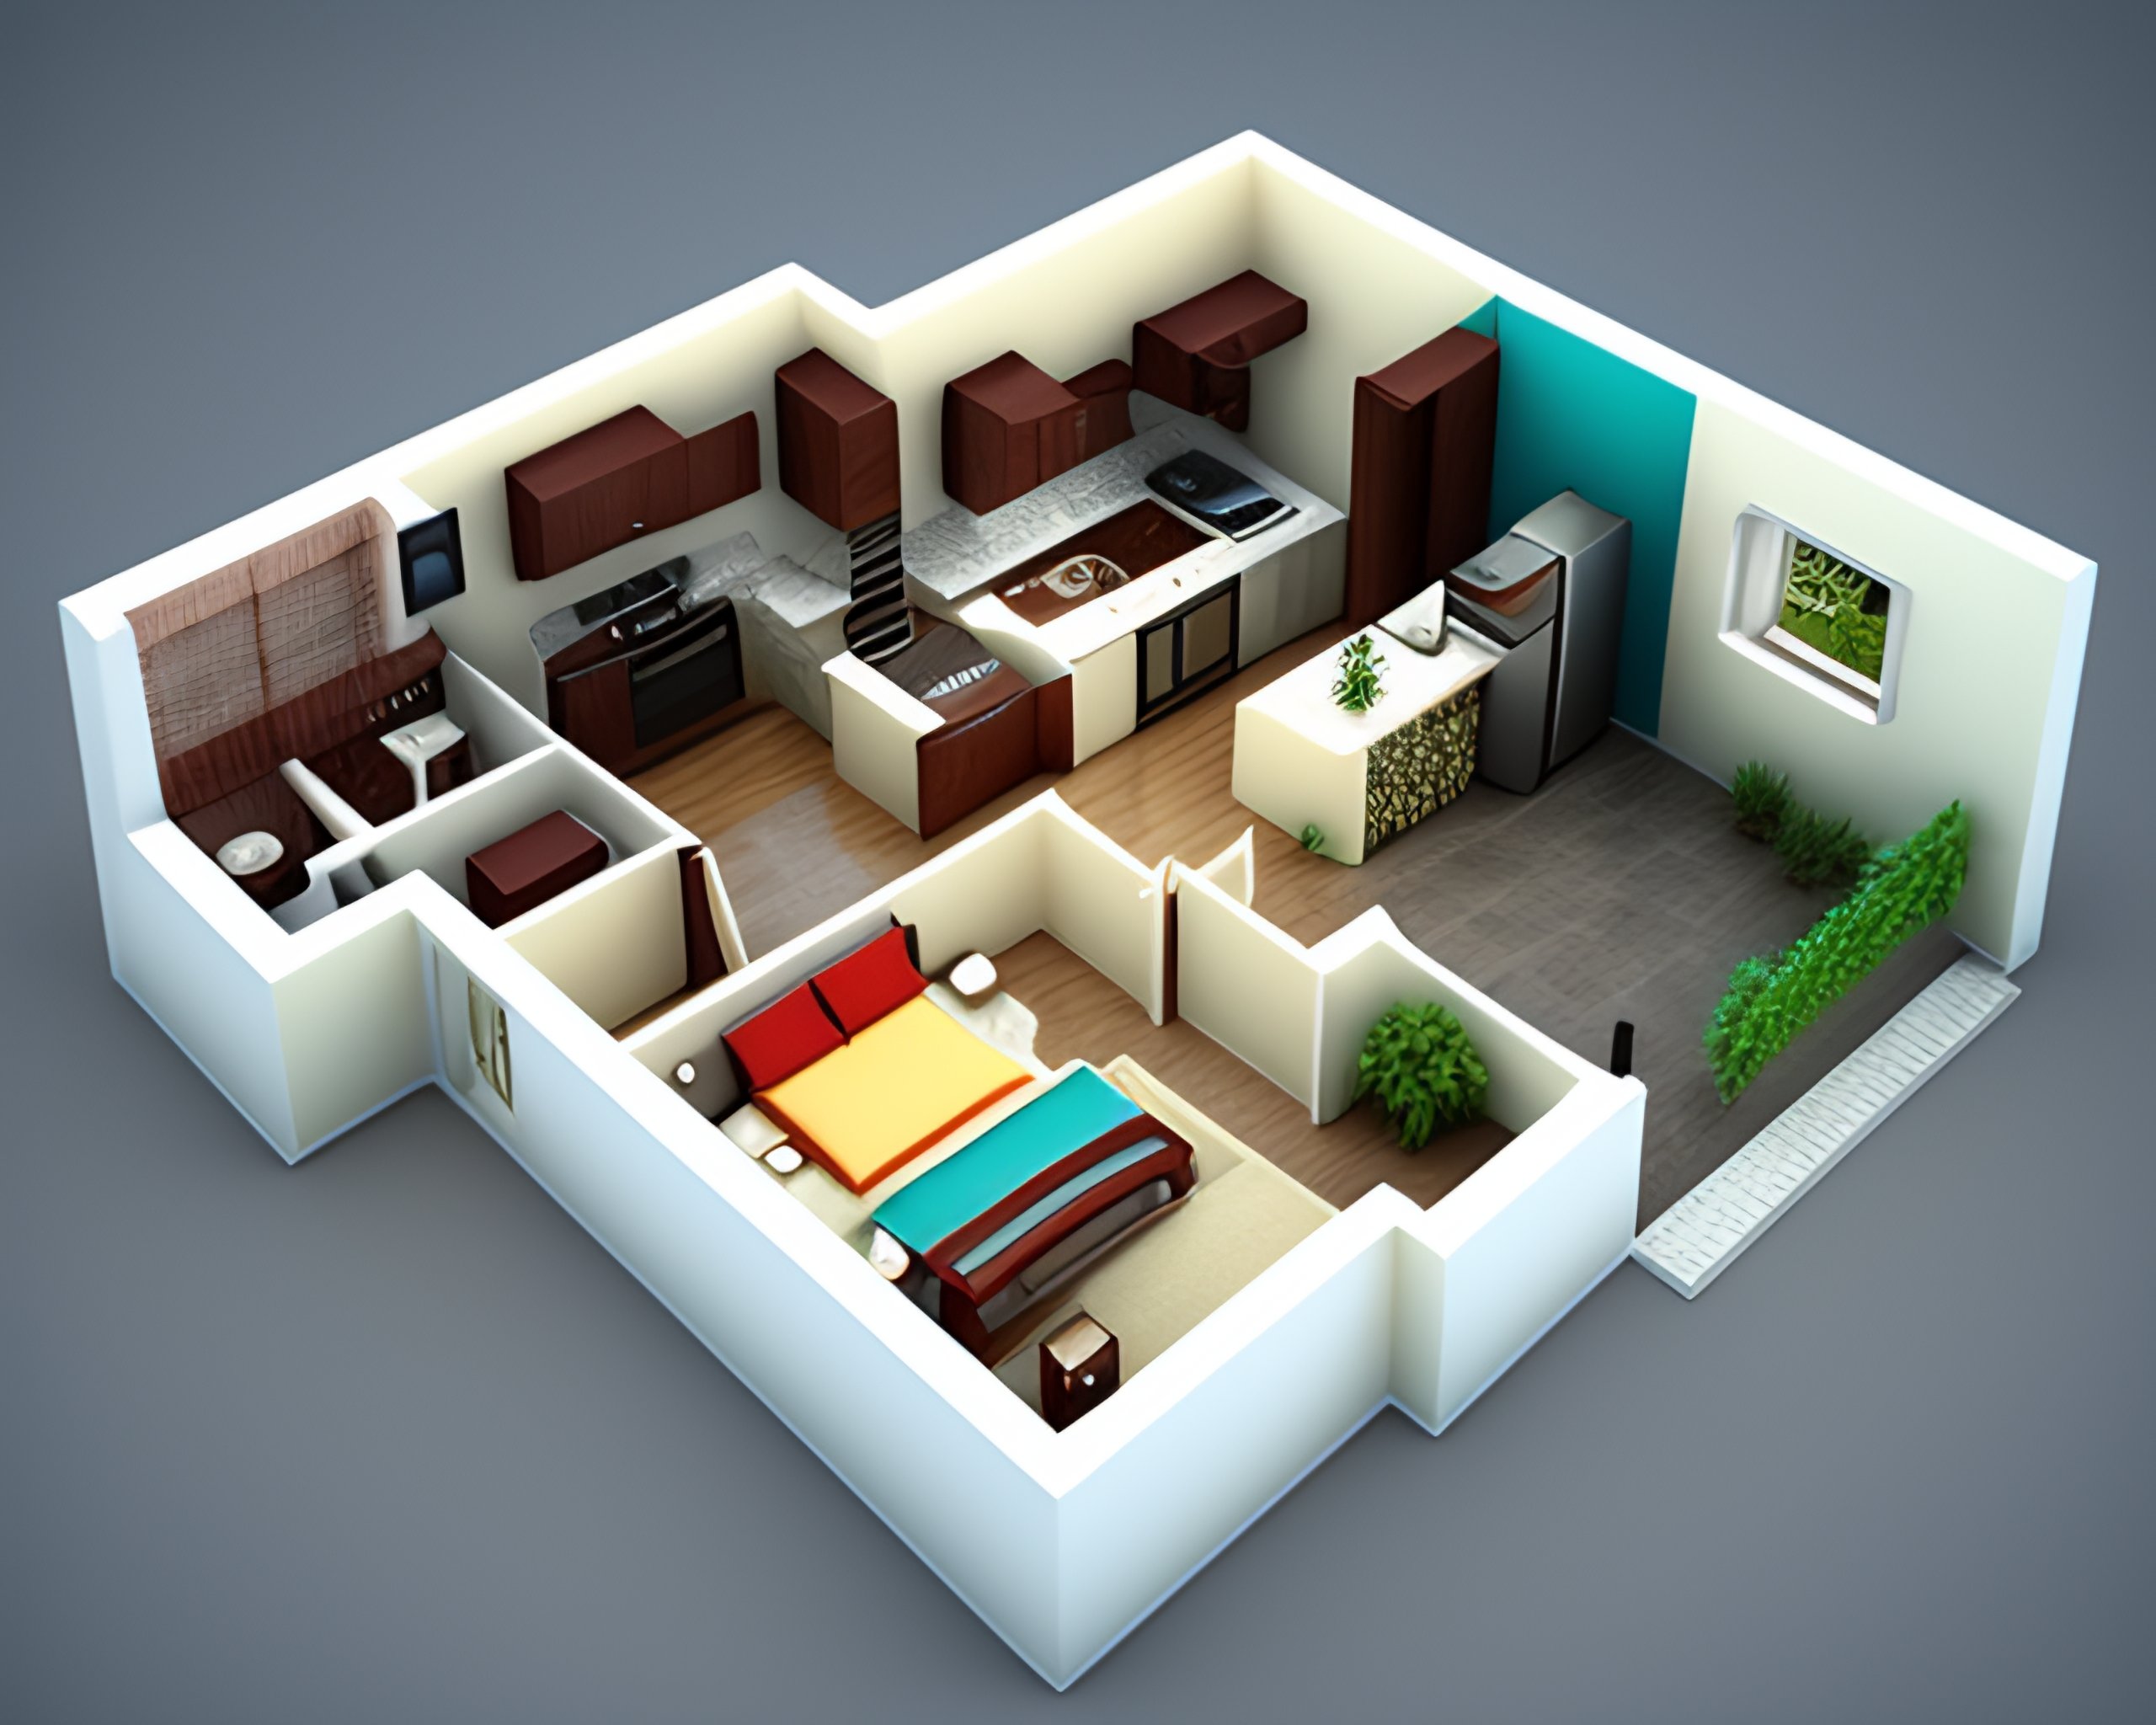 Lexica Small House 1st Floor Plan